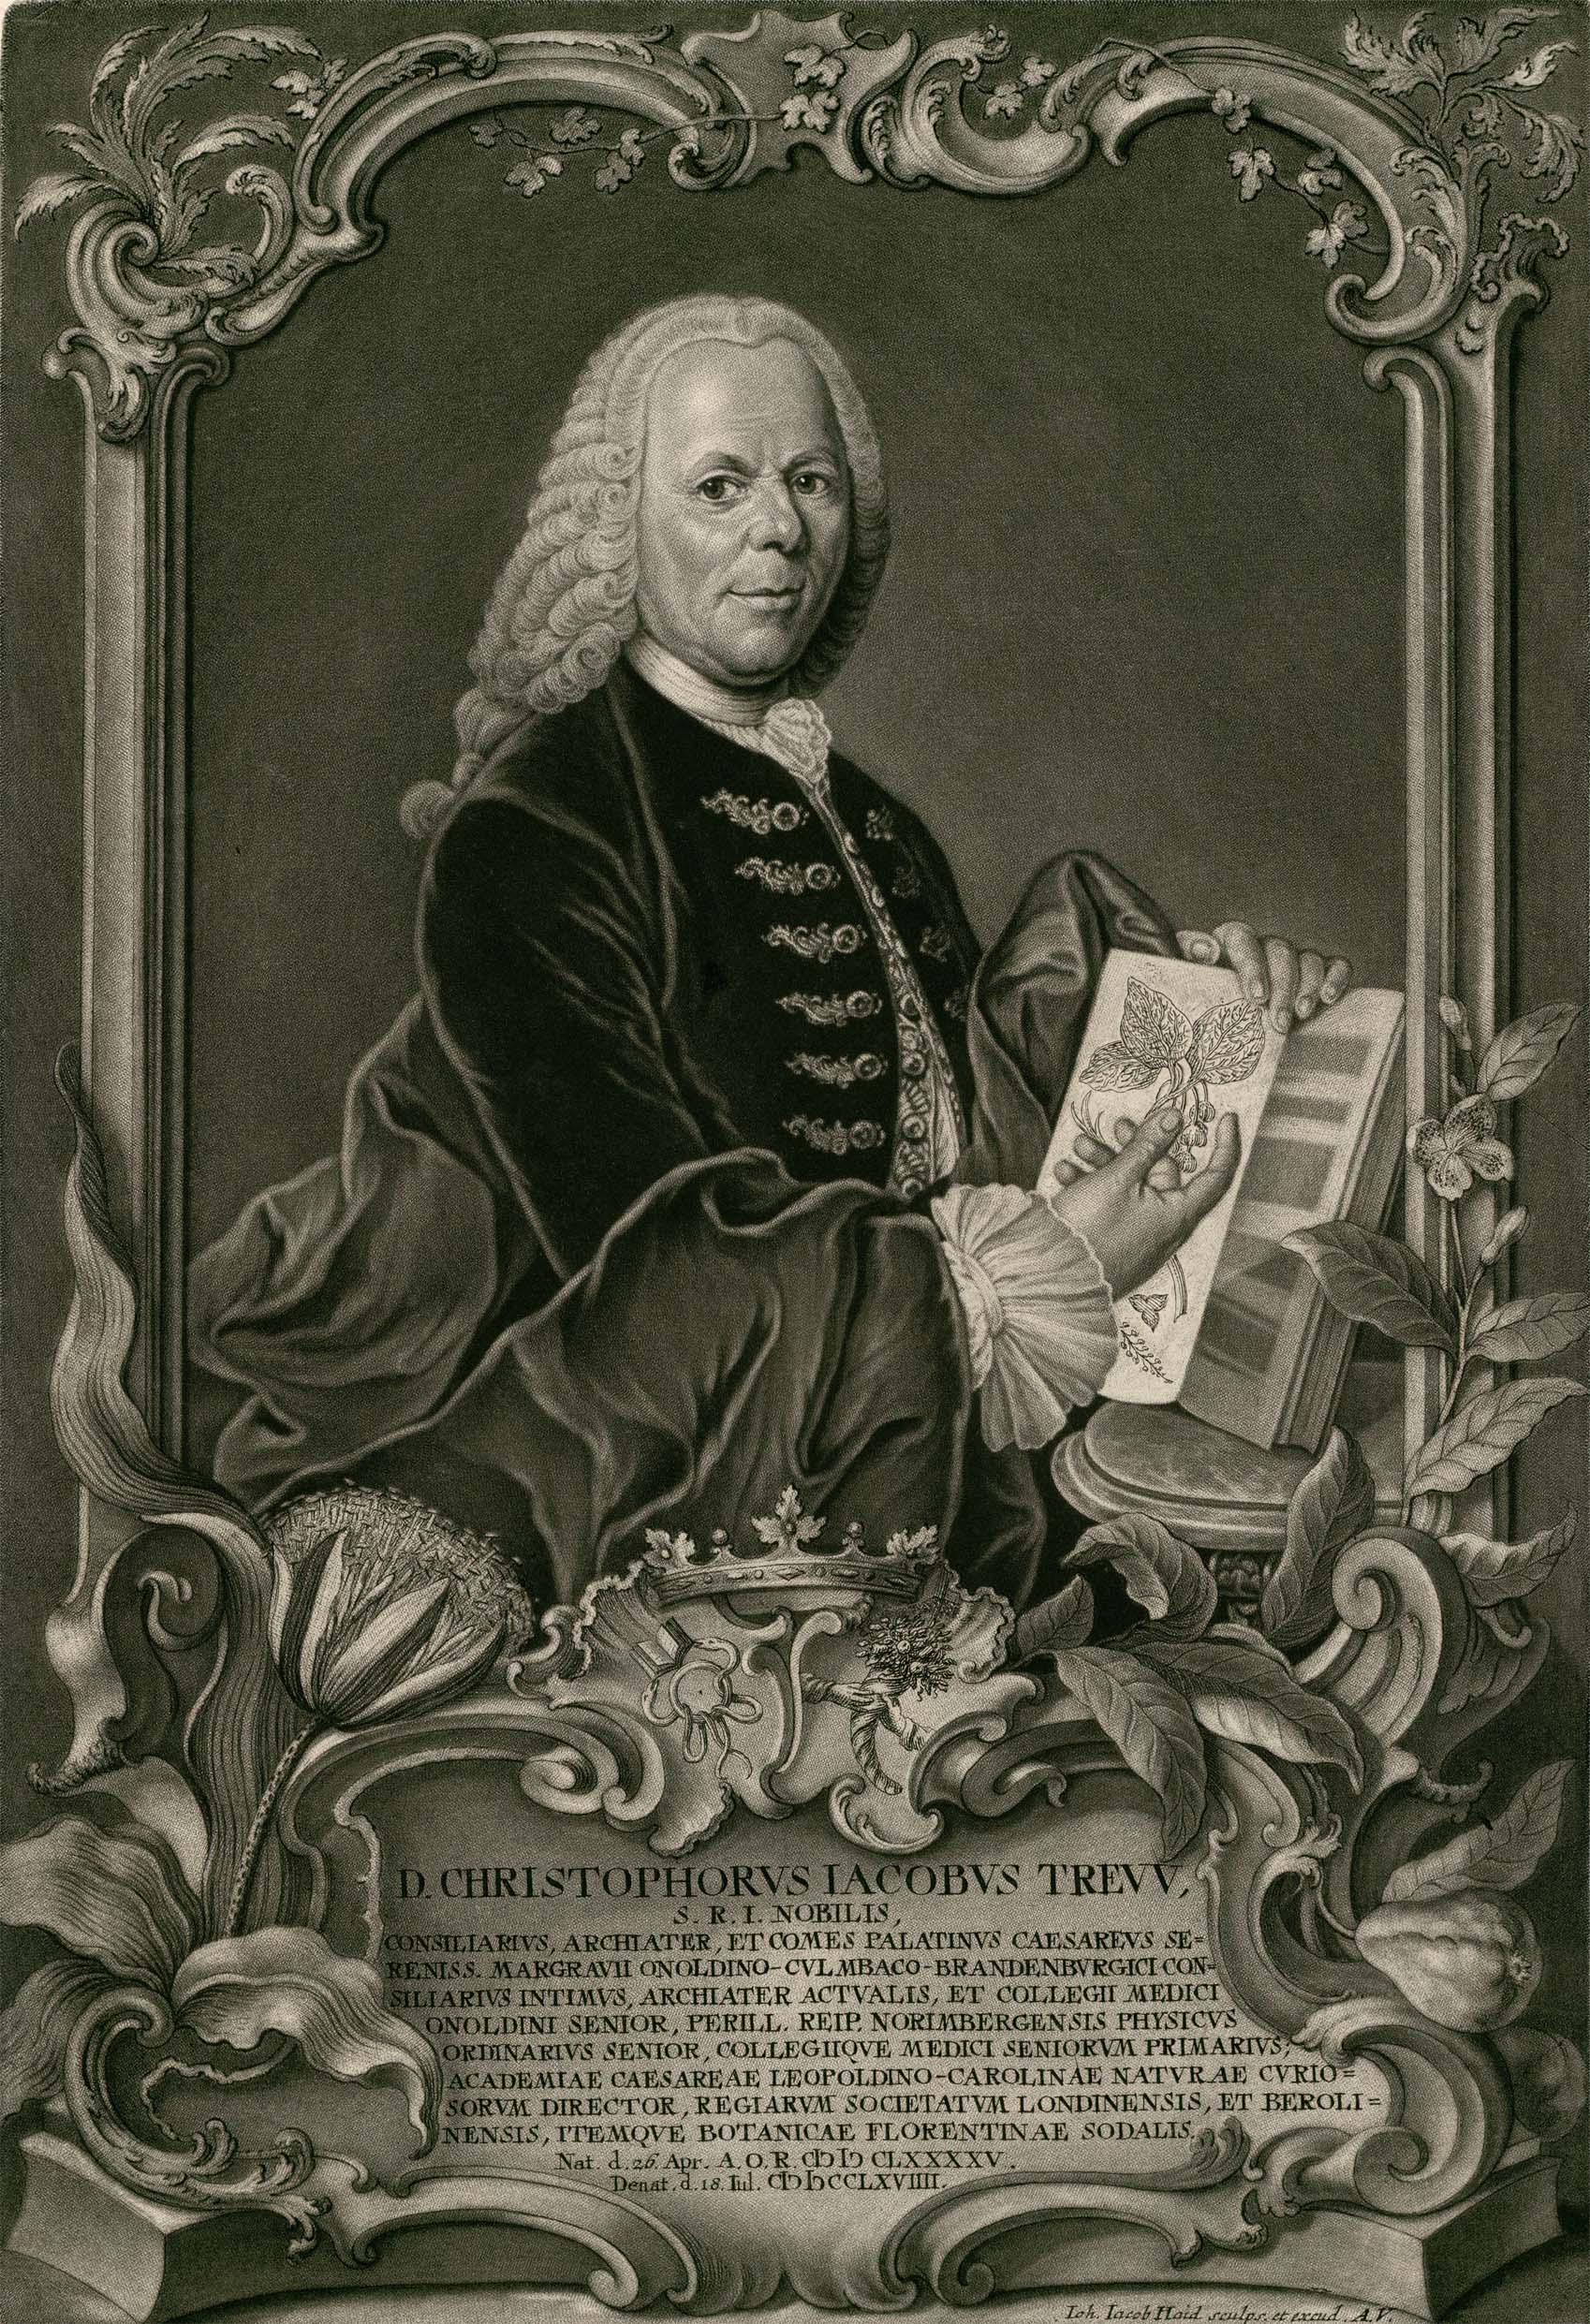 Pintura em preto e branco do médico alemão Christoph Jacob Trew. Um homem com uma peruca antiga com cabelos cacheados, longos e presos em um rabo de cavalo, roupas de época e um livro em suas mãos.